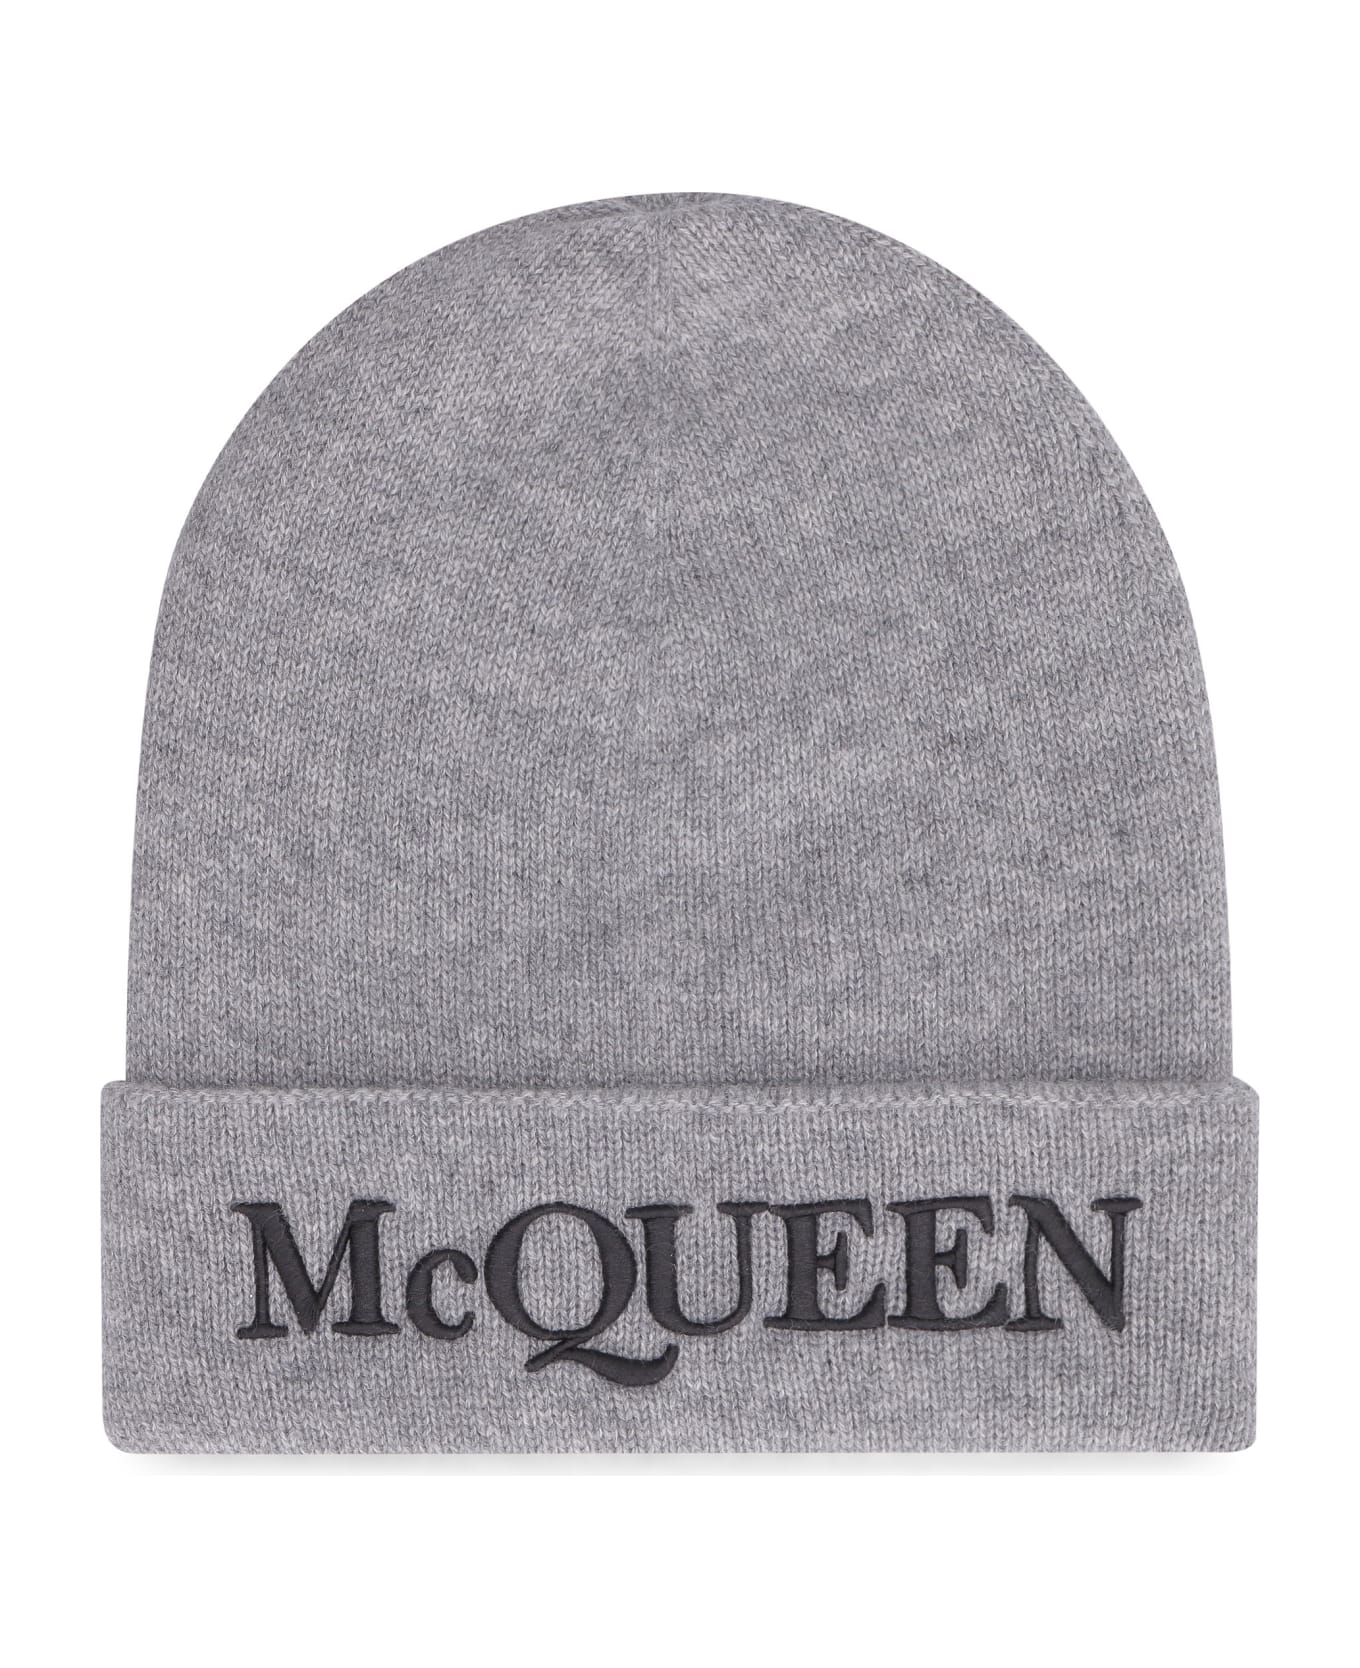 Alexander McQueen Knitted Beanie Hat - grey 帽子